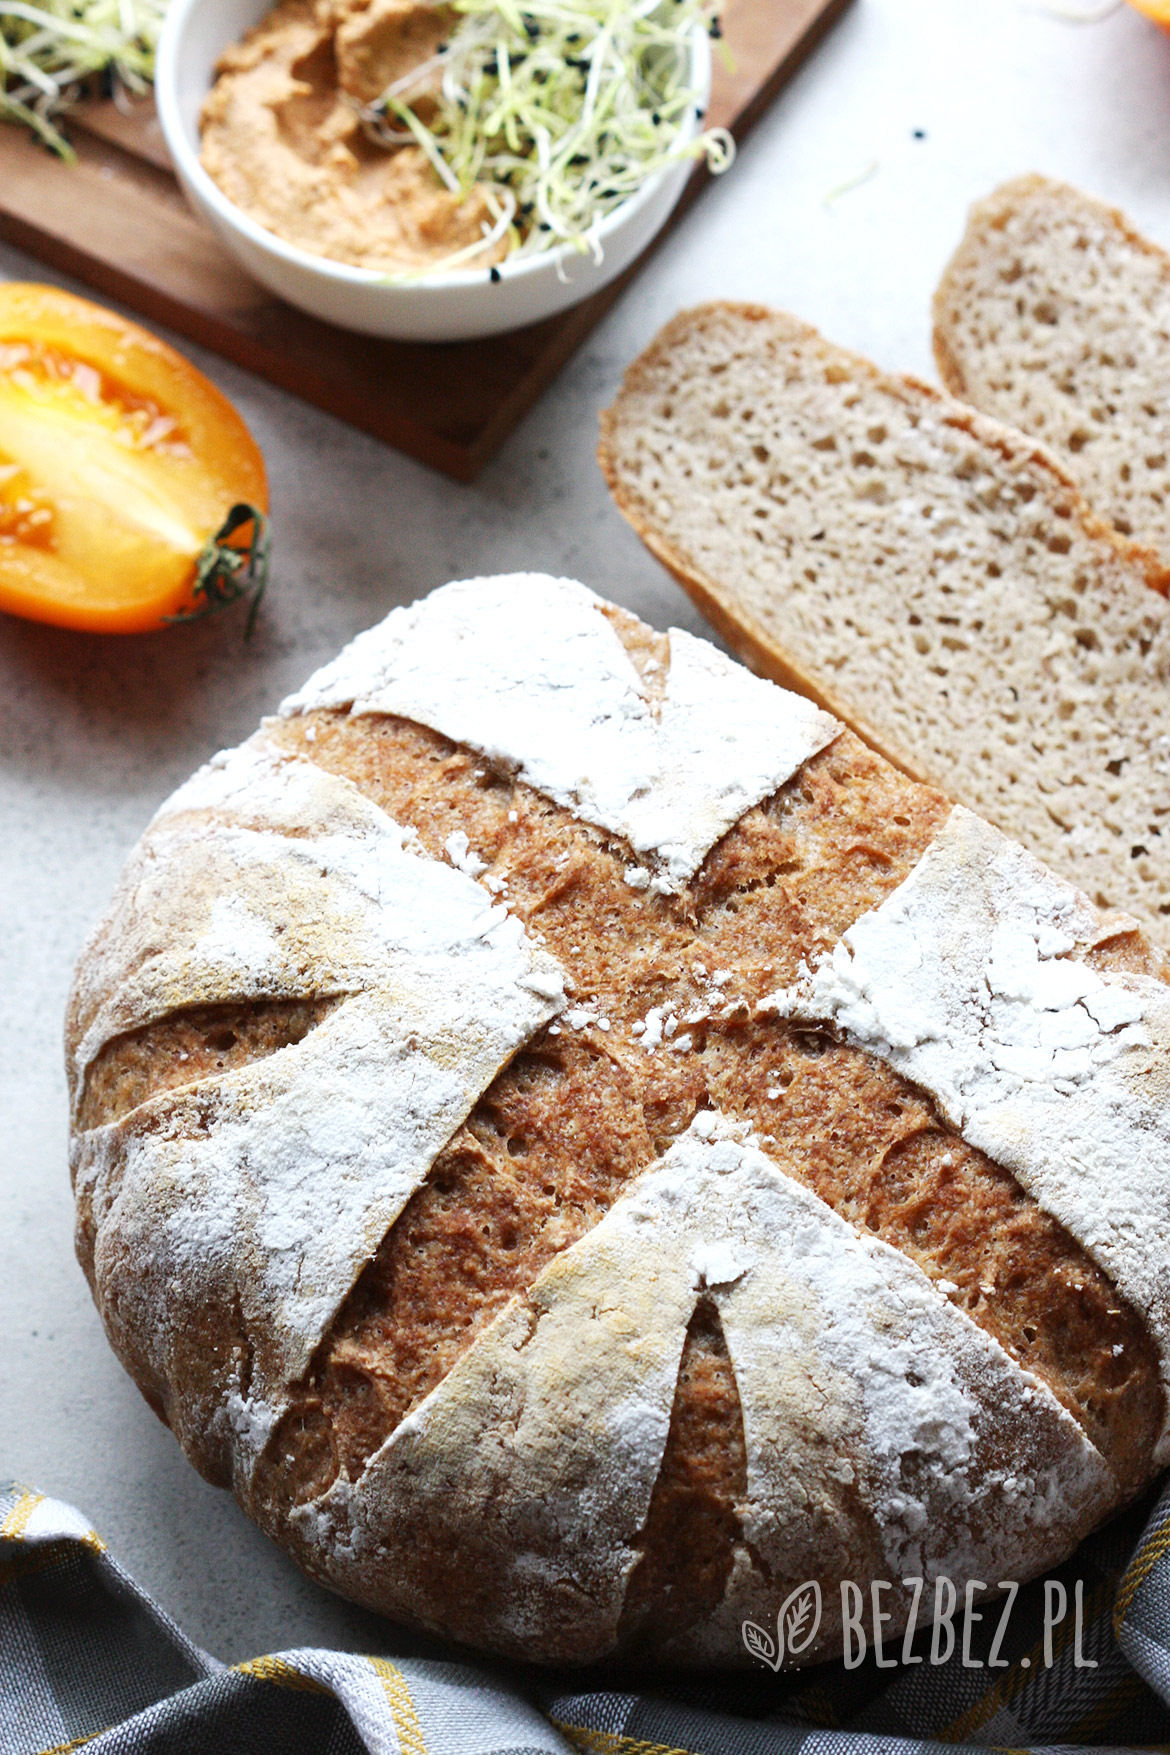 Chleb bezglutenowy na drożdżach pieczony w garnku